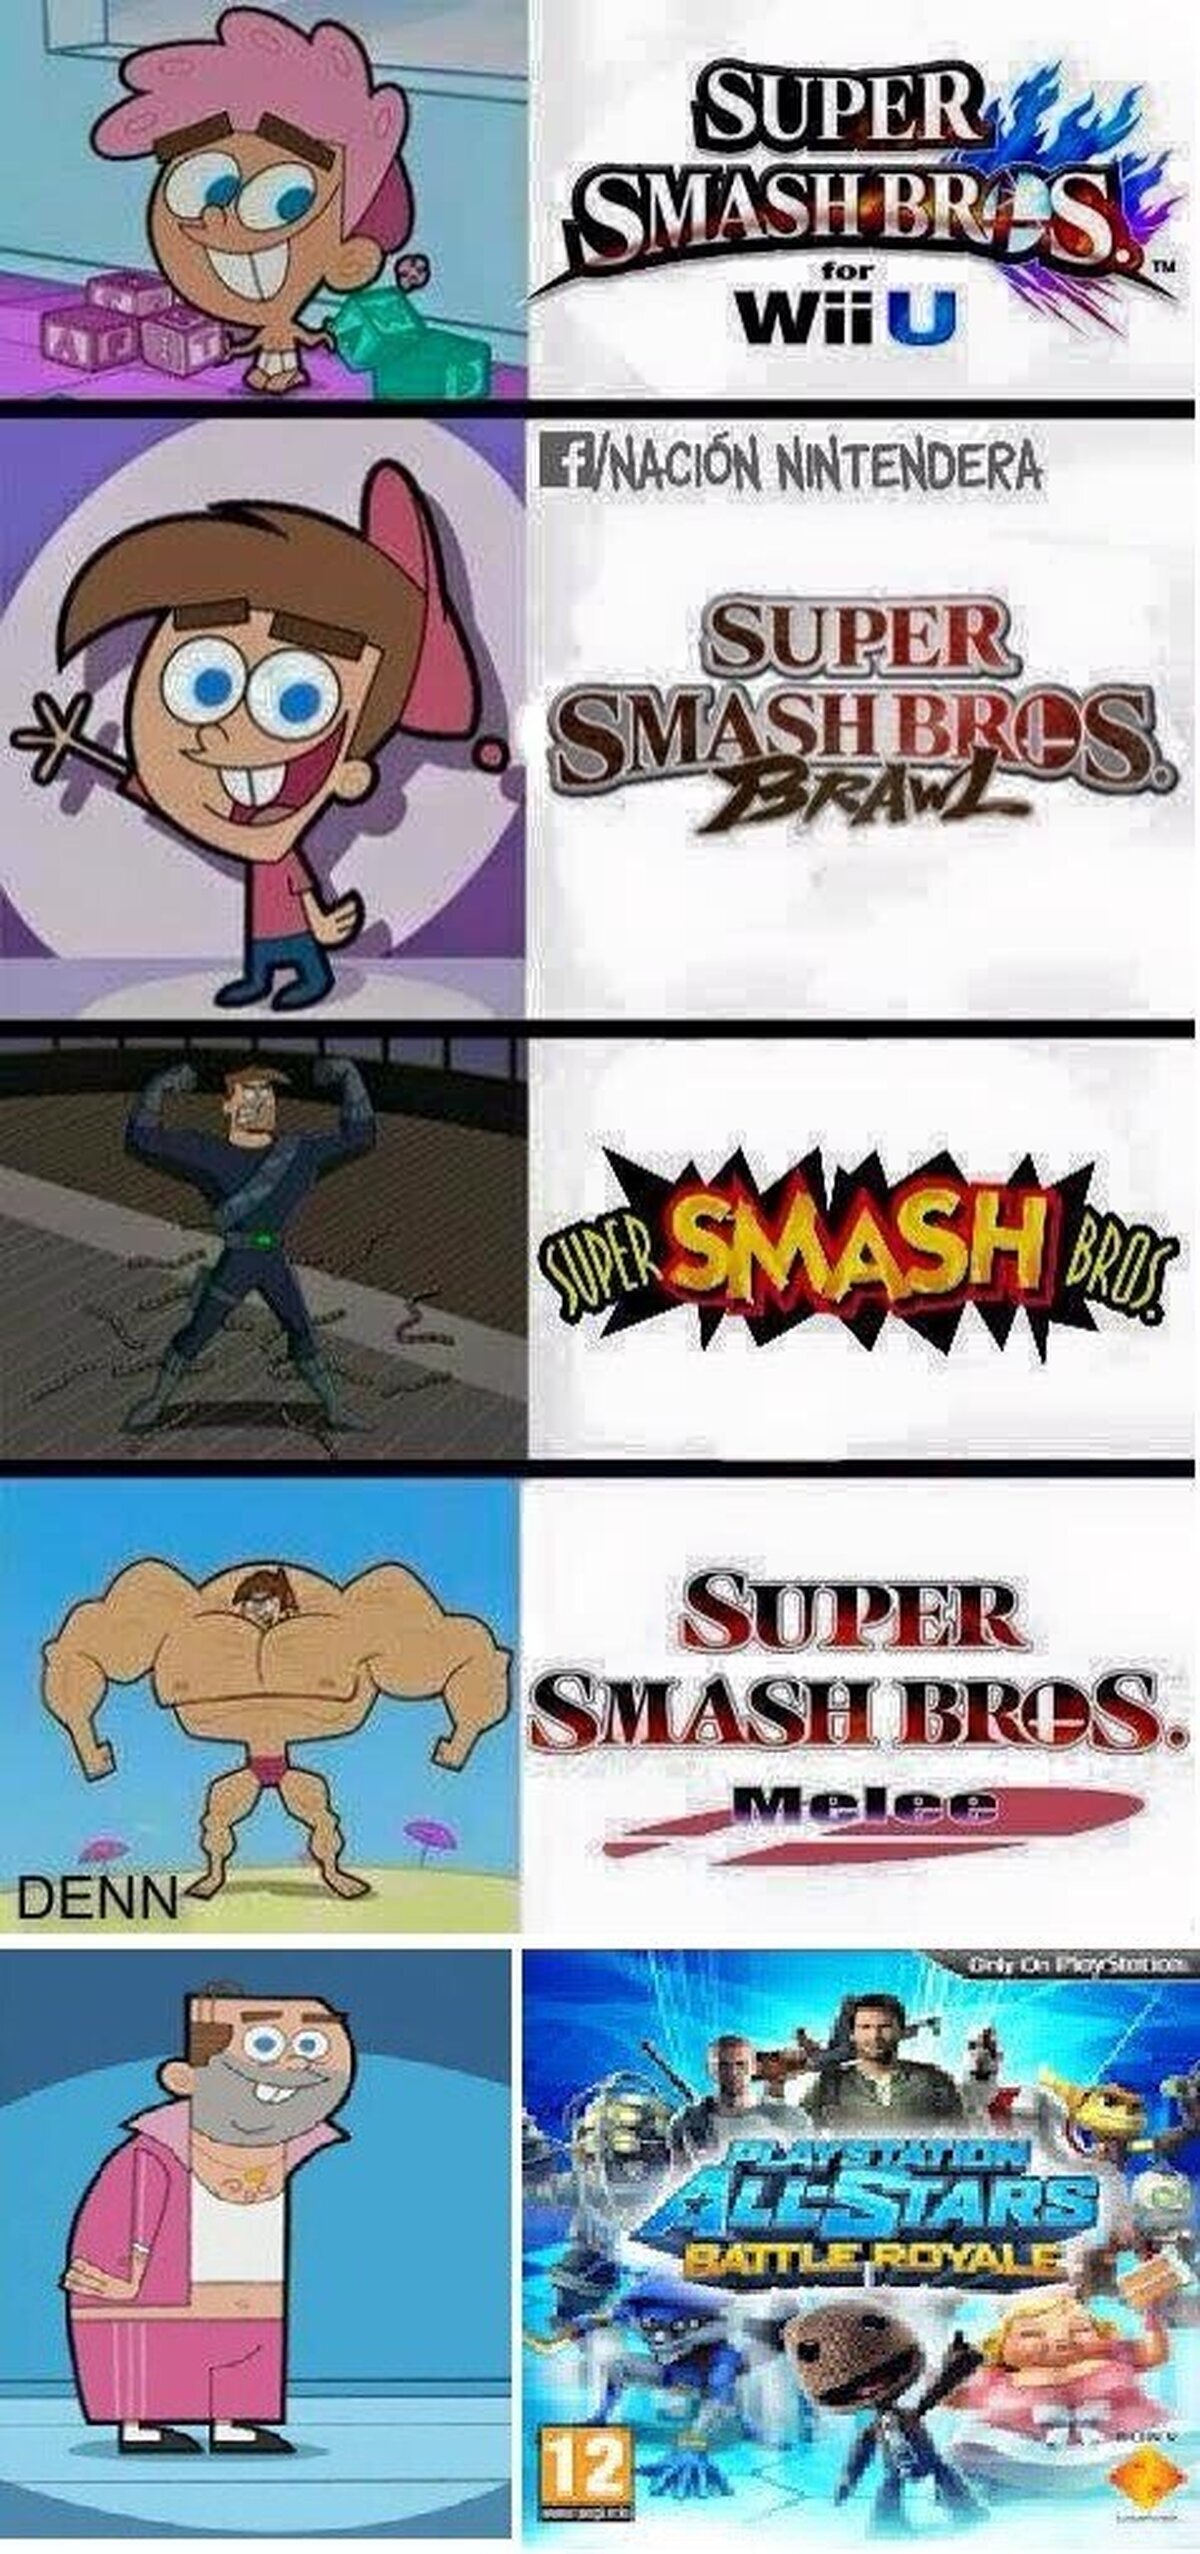 La saga Smash Bros en una imagen